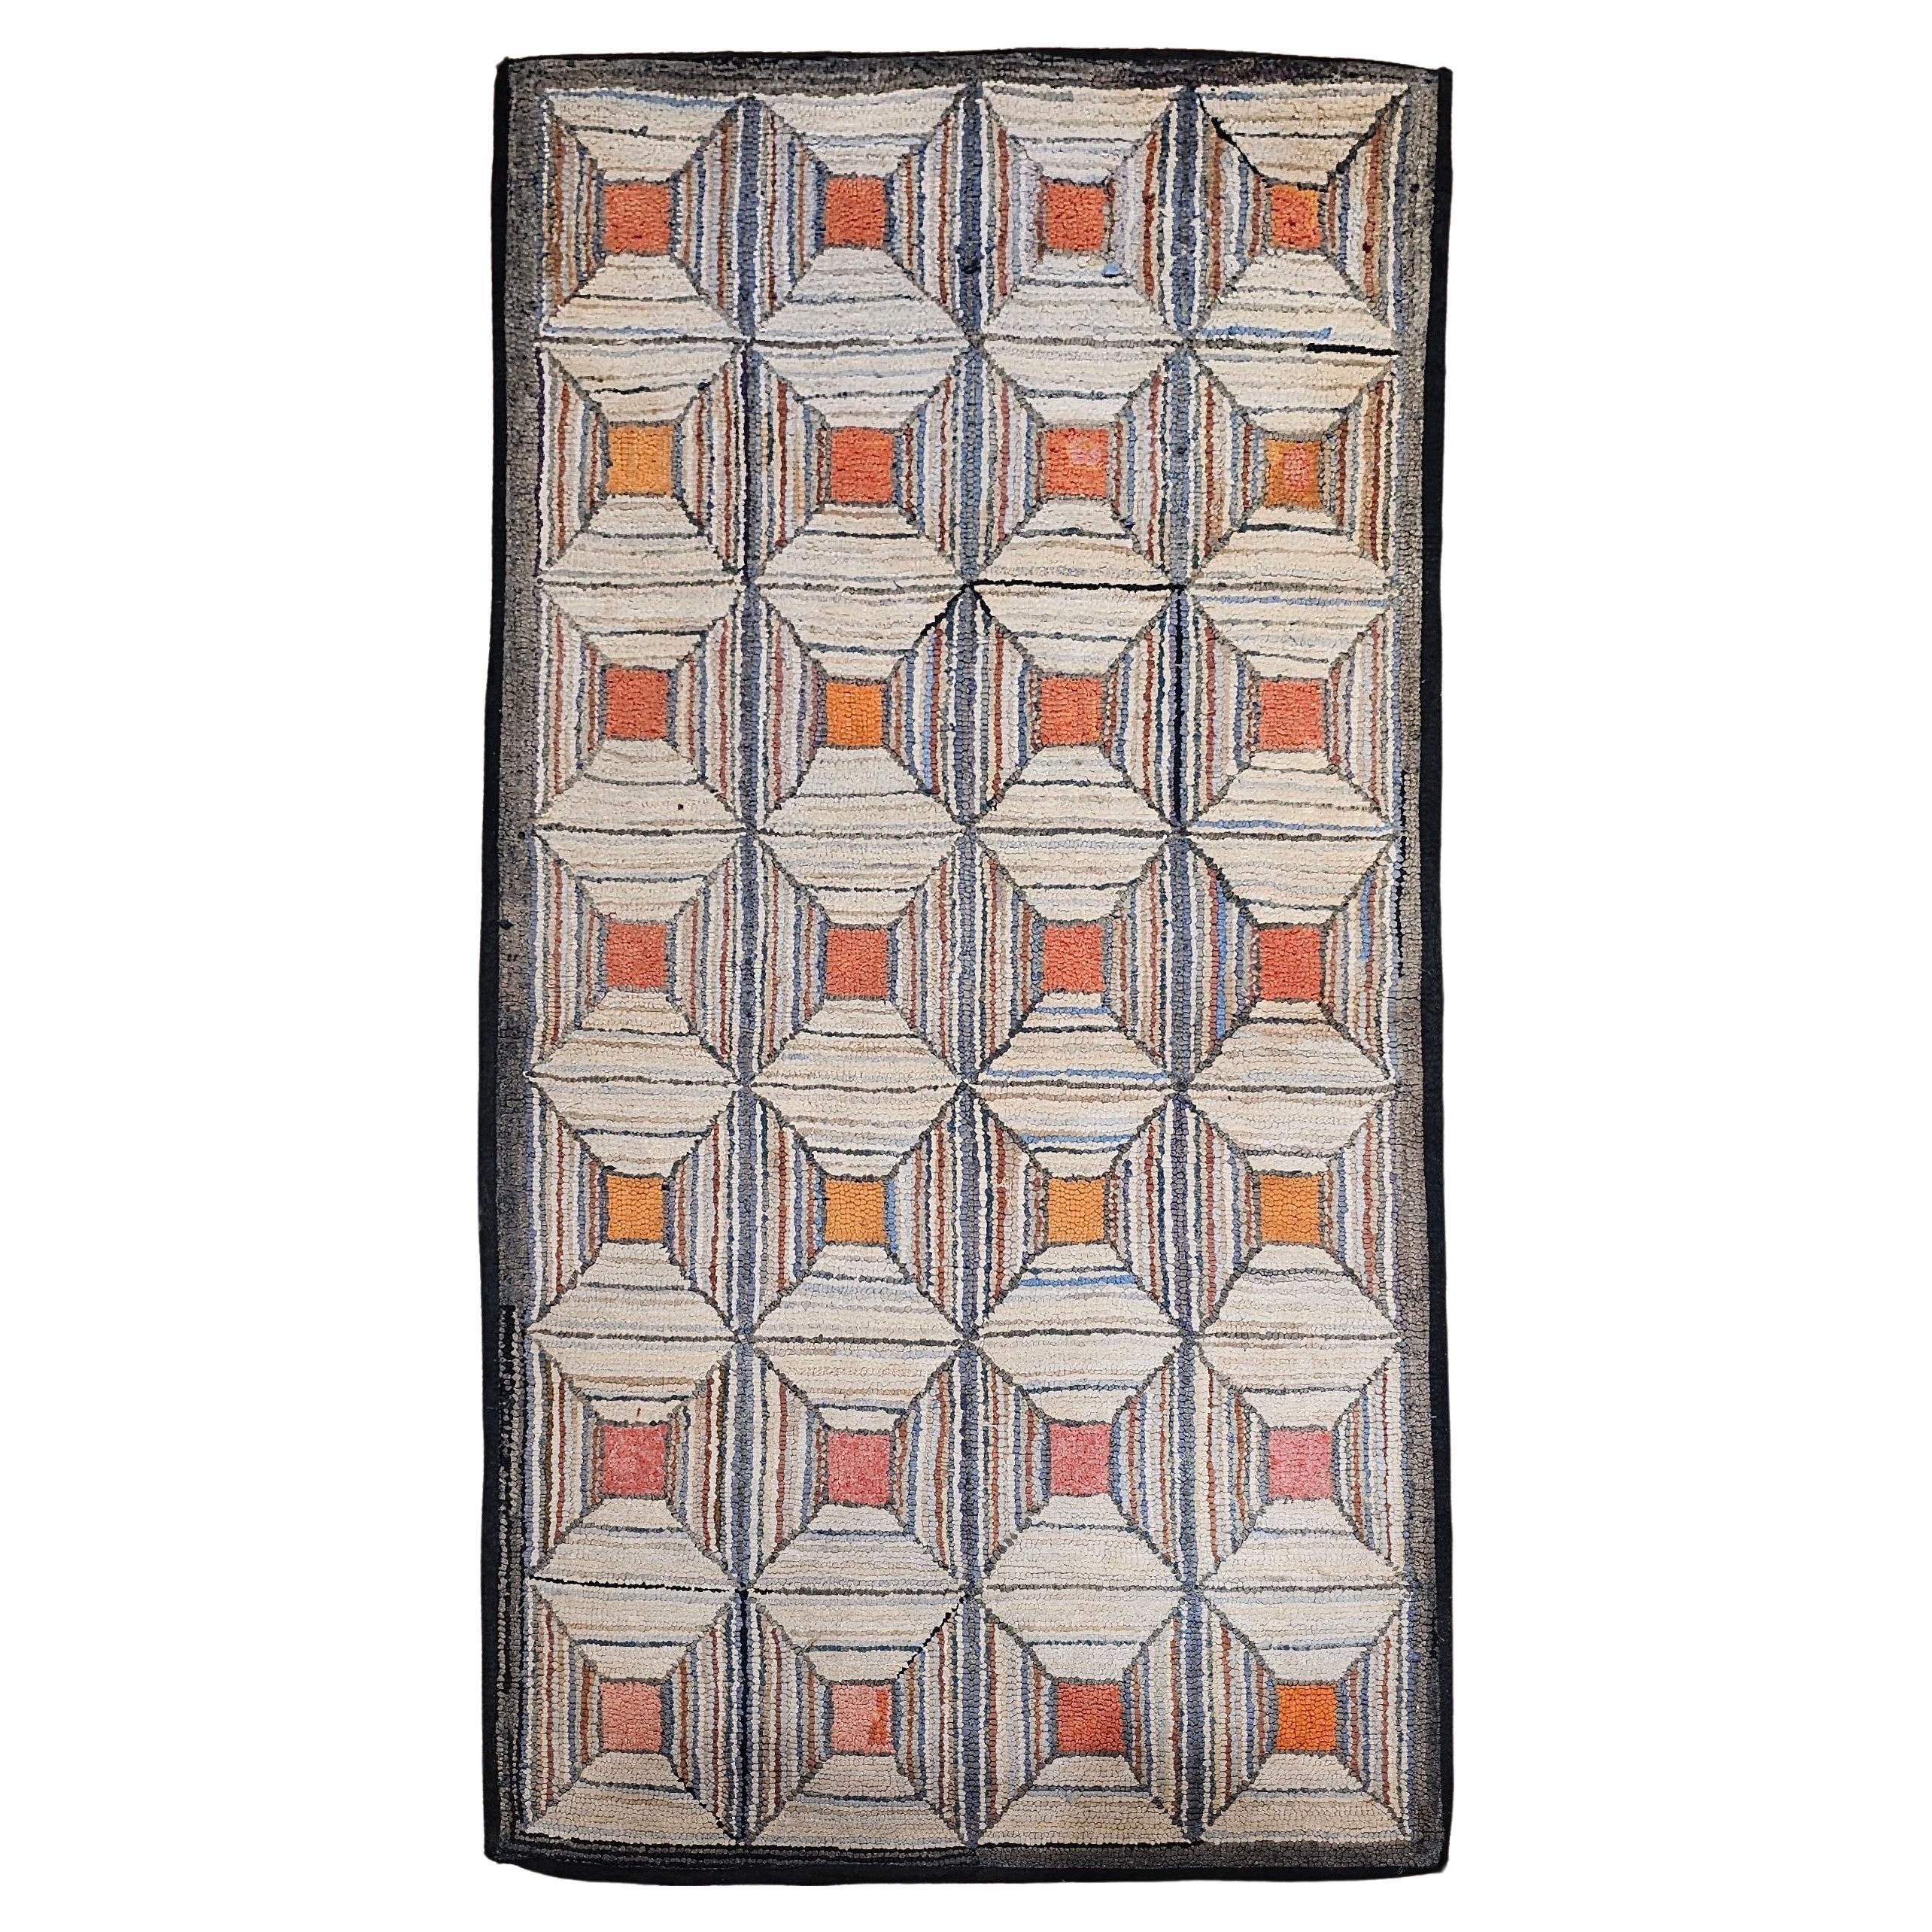 Amerikanischer handgehäkelter Vintage-Teppich mit geometrischem Muster in Elfenbein, Rosa, Orange, Bl